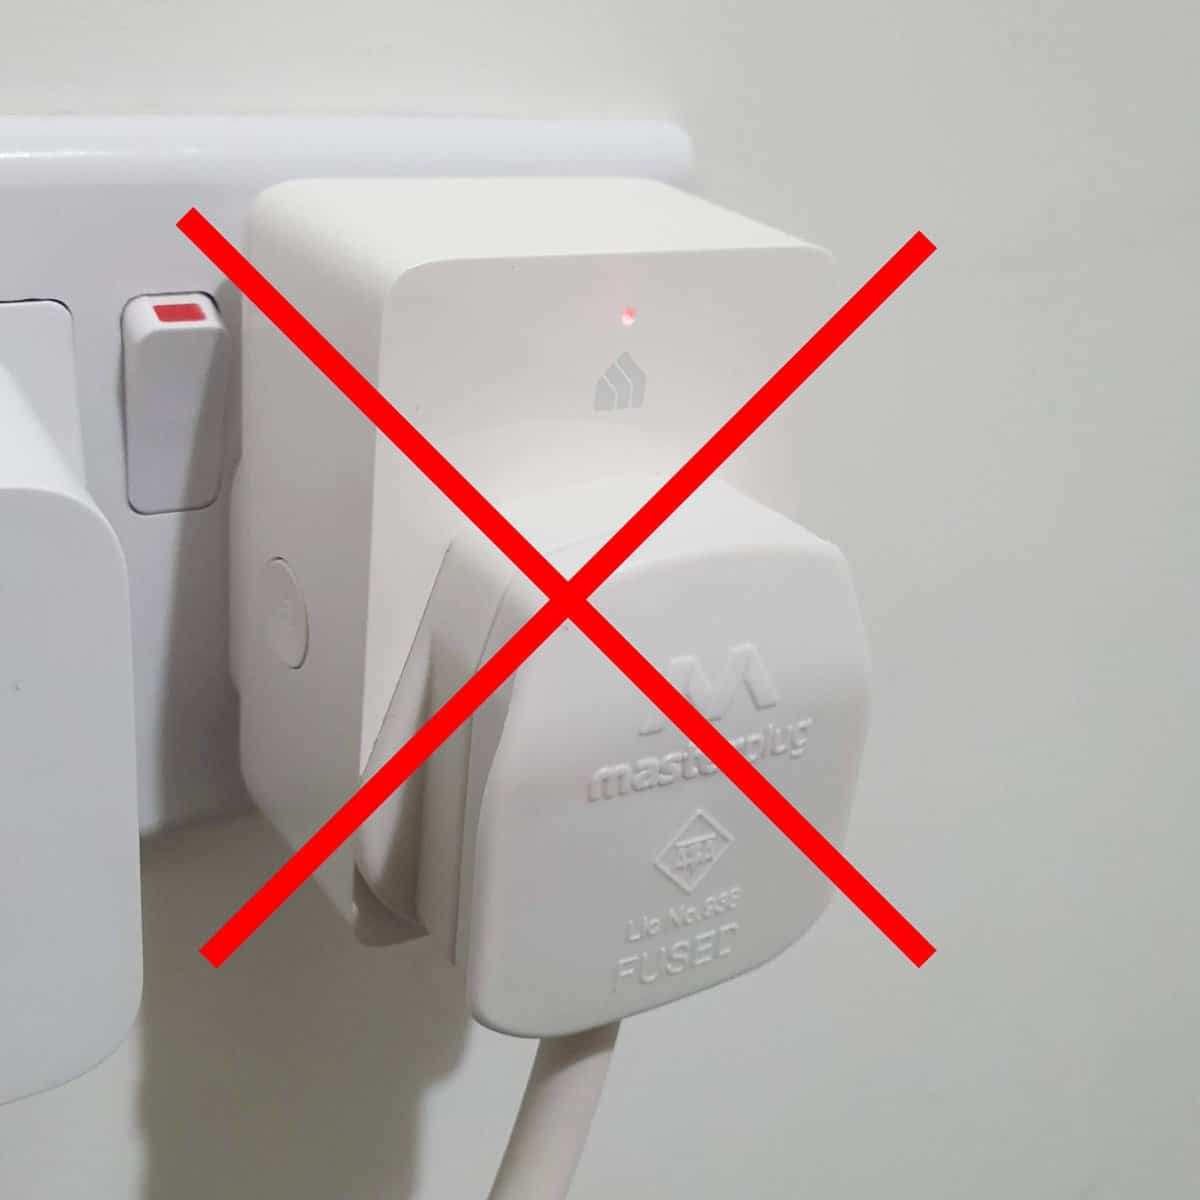 How to Reset a Kasa Smart Plug